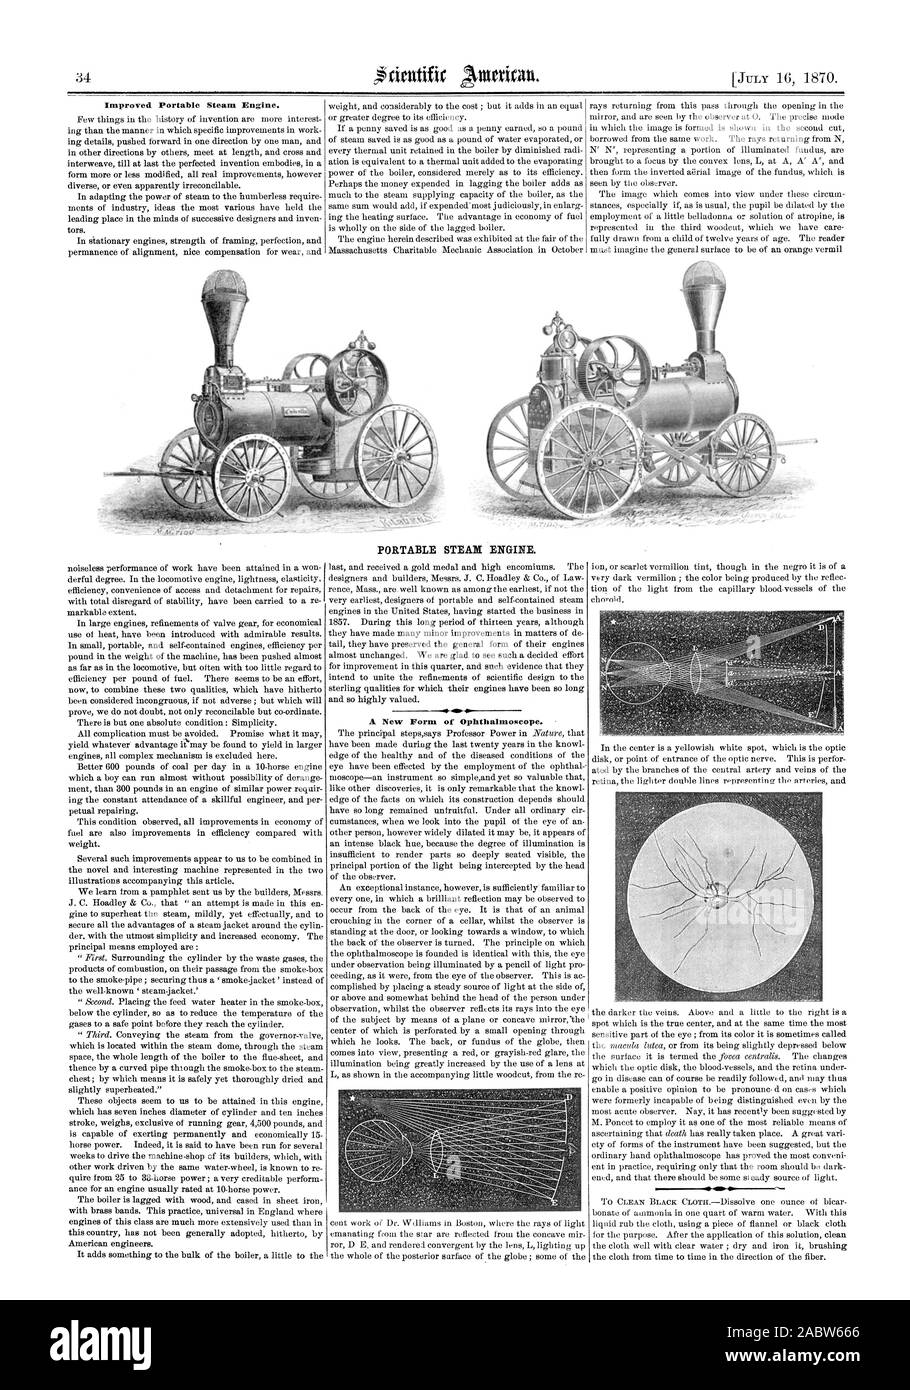 Portable steam engine, scientific american, 1870-07-16 Stock Photo